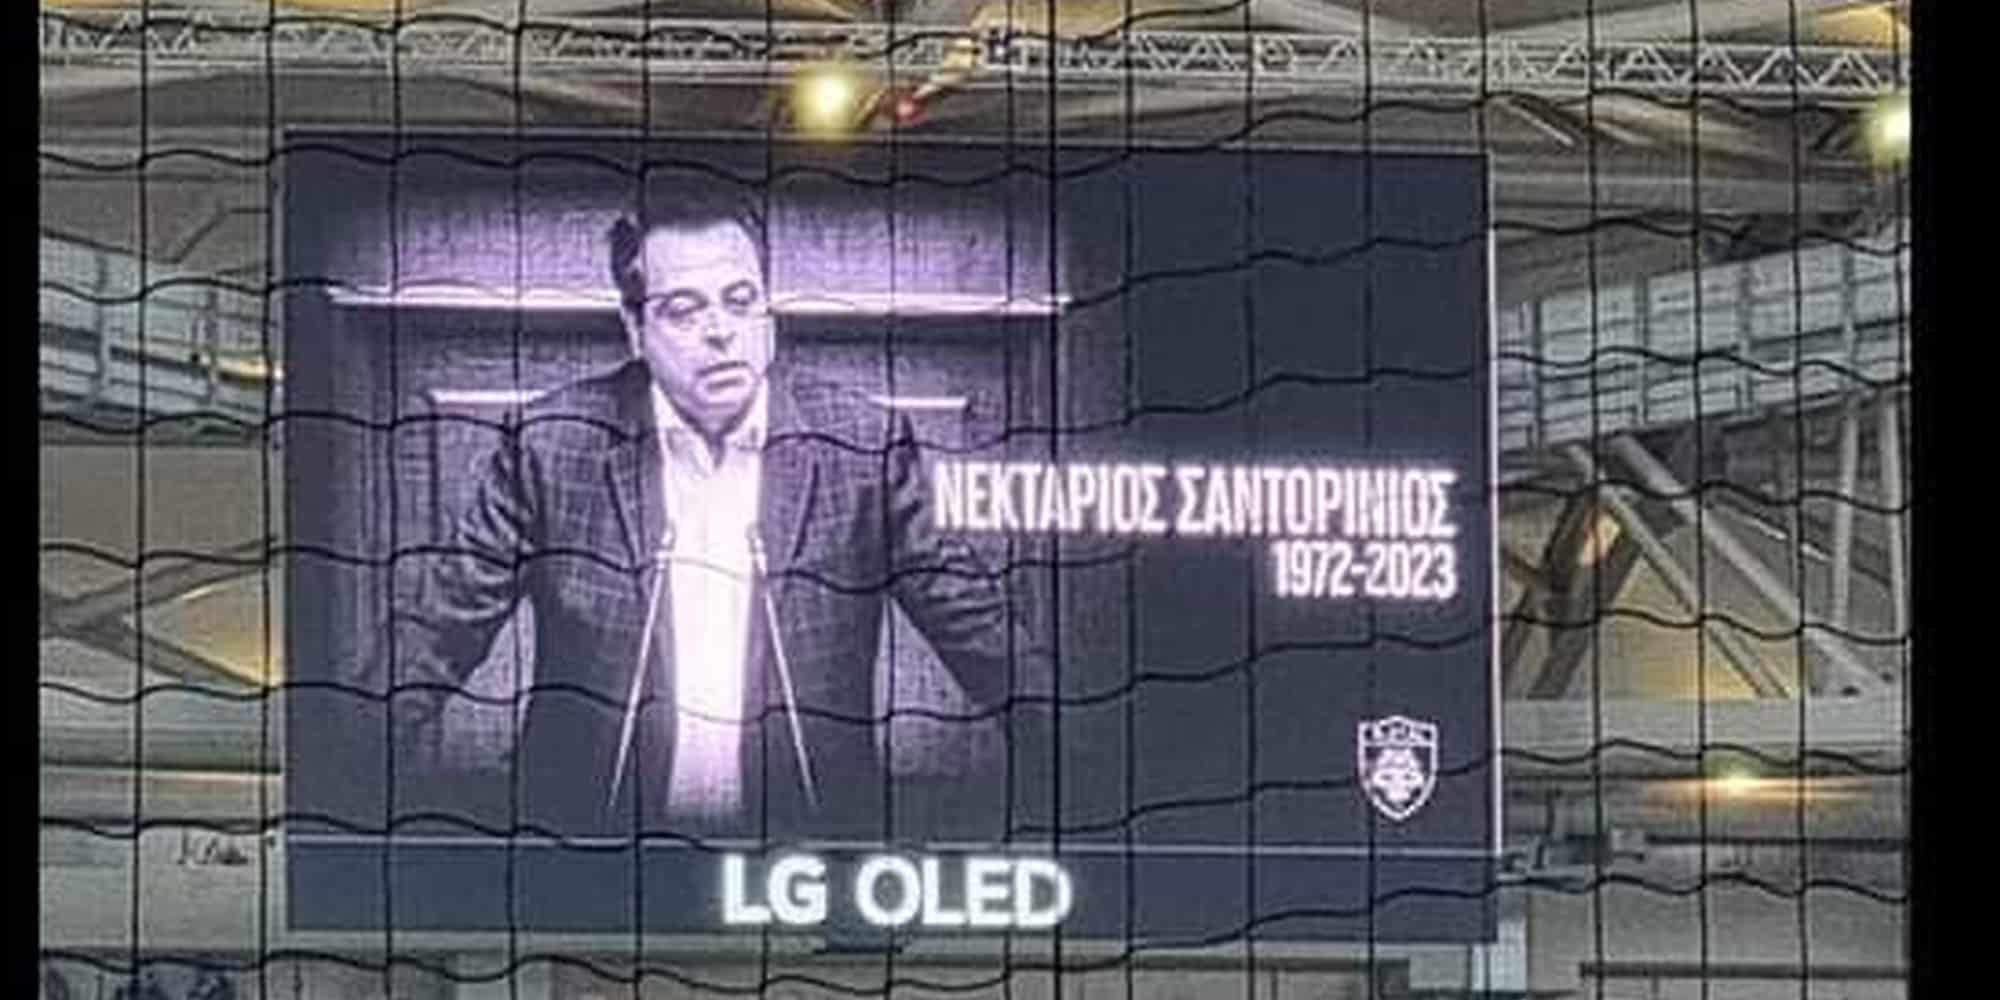 Μήνυμα για τον Νεκτάριο Σαντορινιό στο γήπεδο της ΑΕΚ